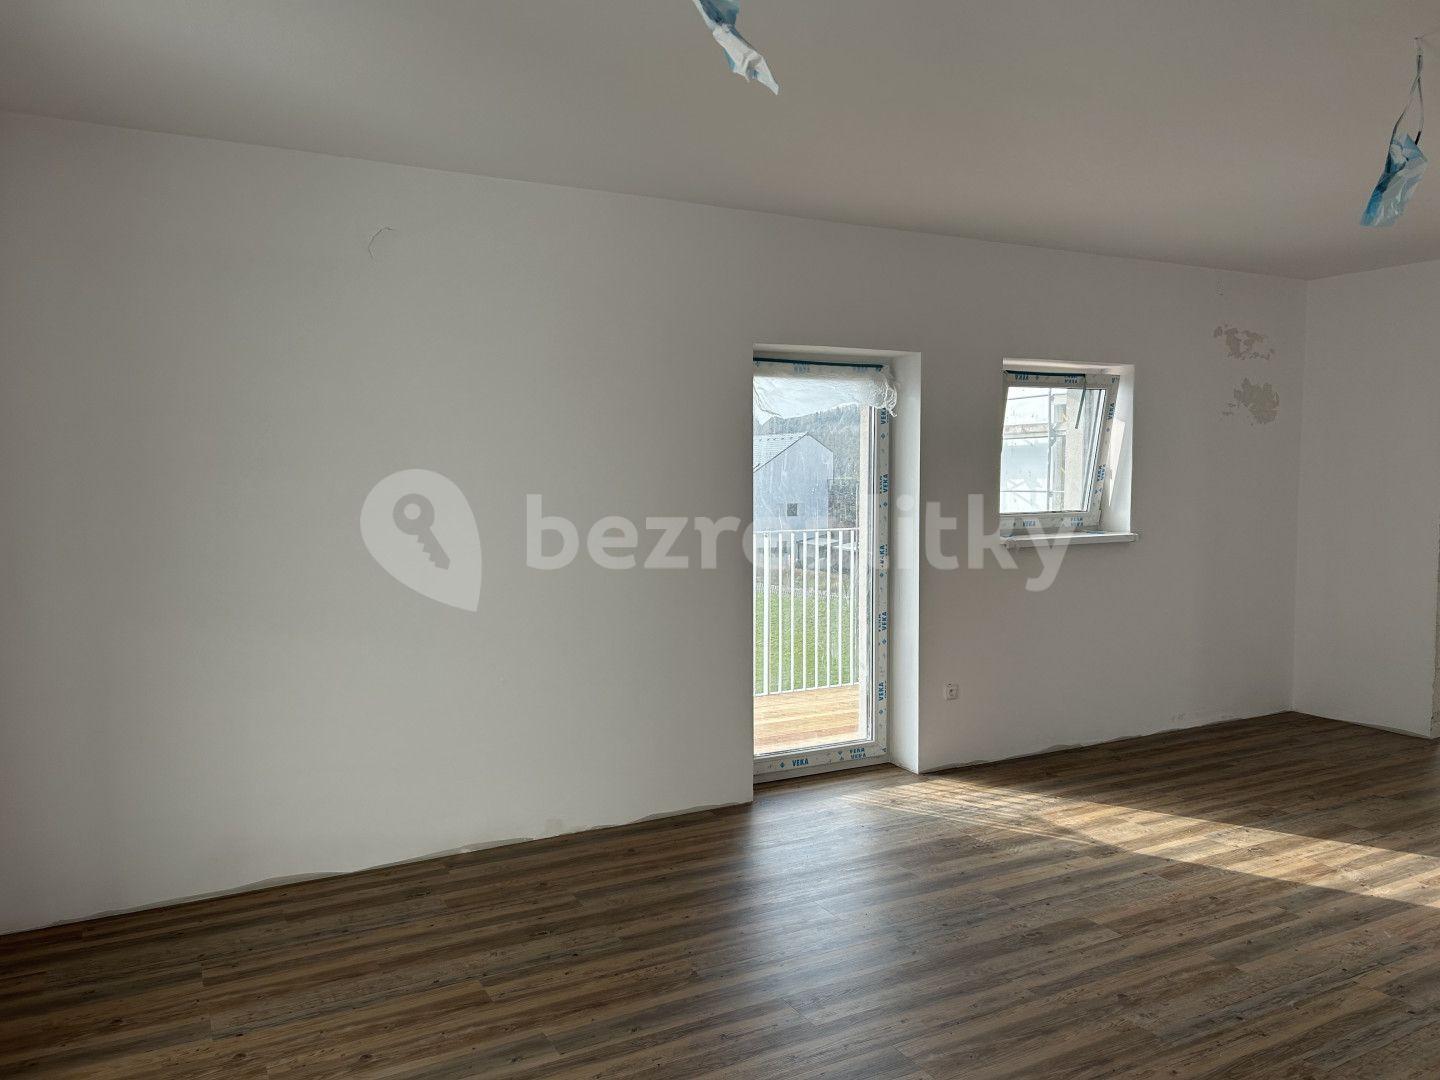 2 bedroom with open-plan kitchen flat for sale, 86 m², Písečná, Rožnov pod Radhoštěm, Zlínský Region